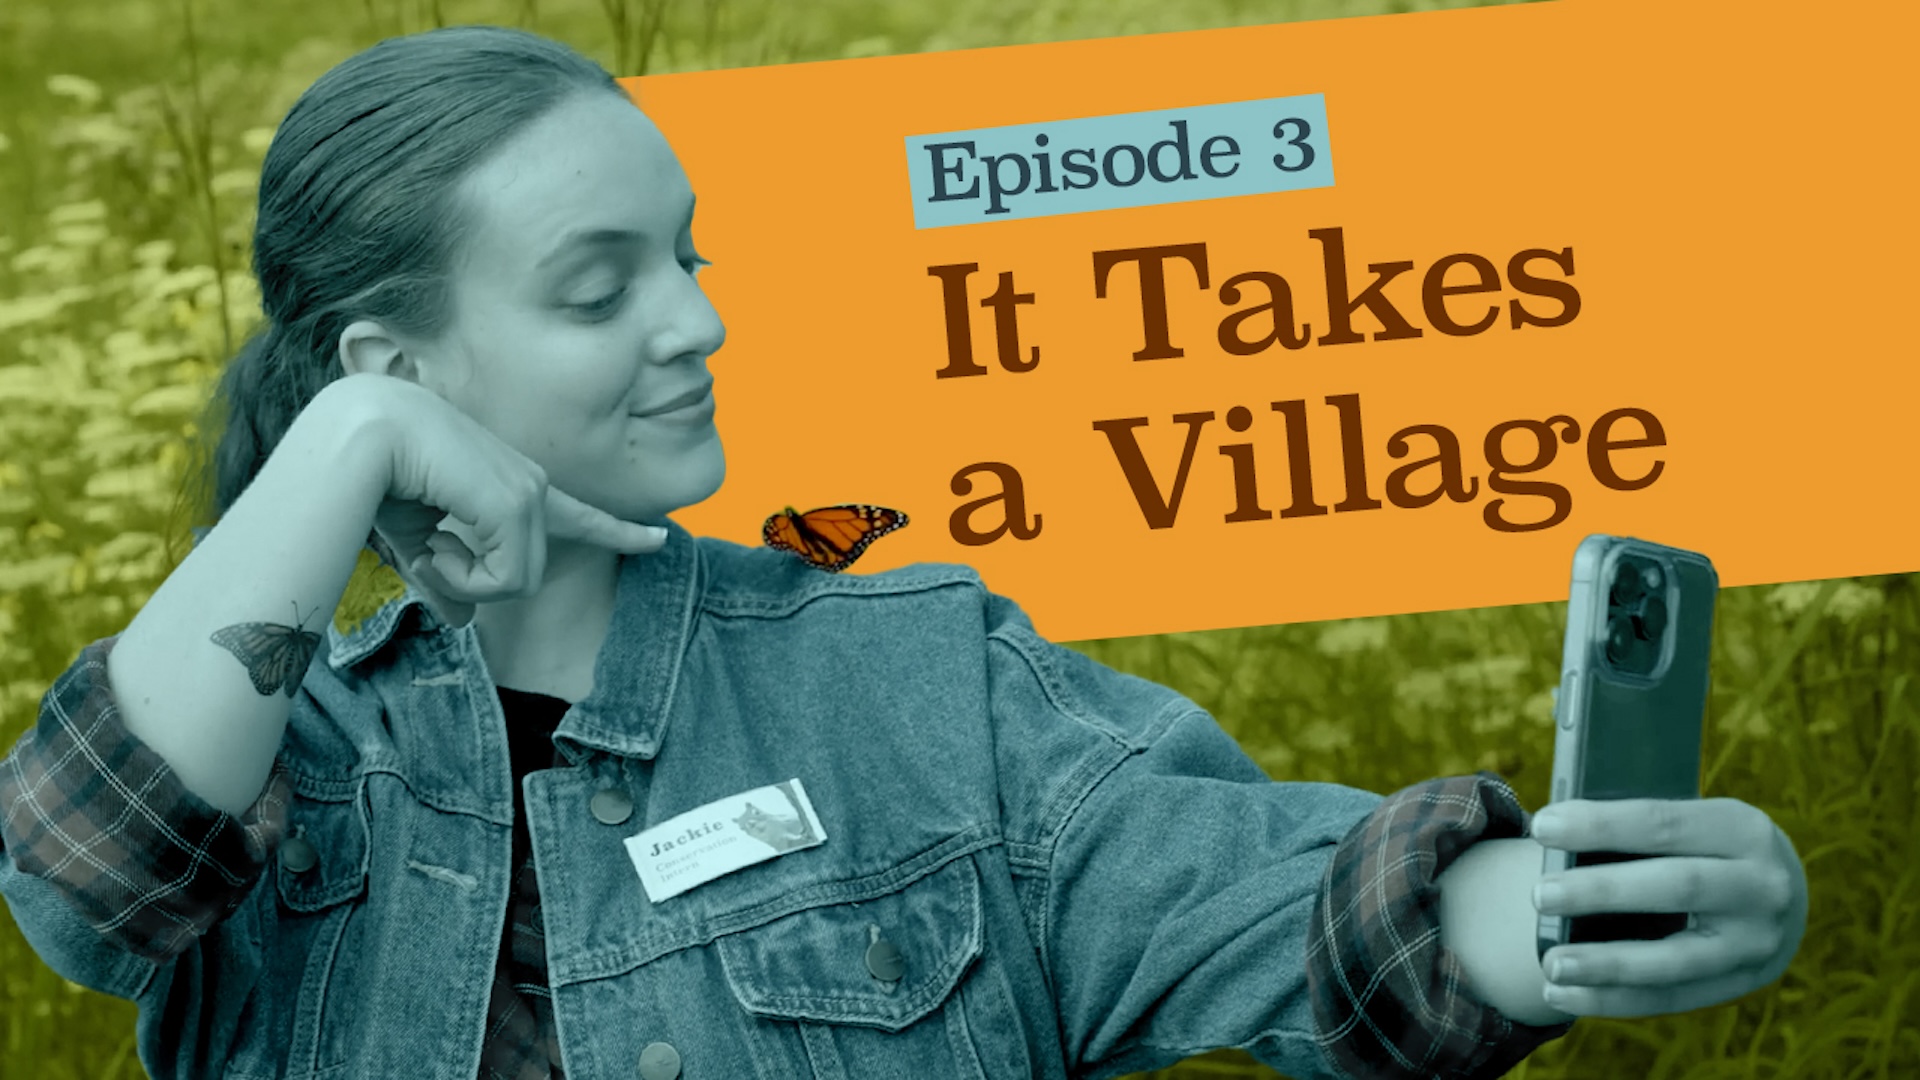 Episode 3: “It Takes A Village”